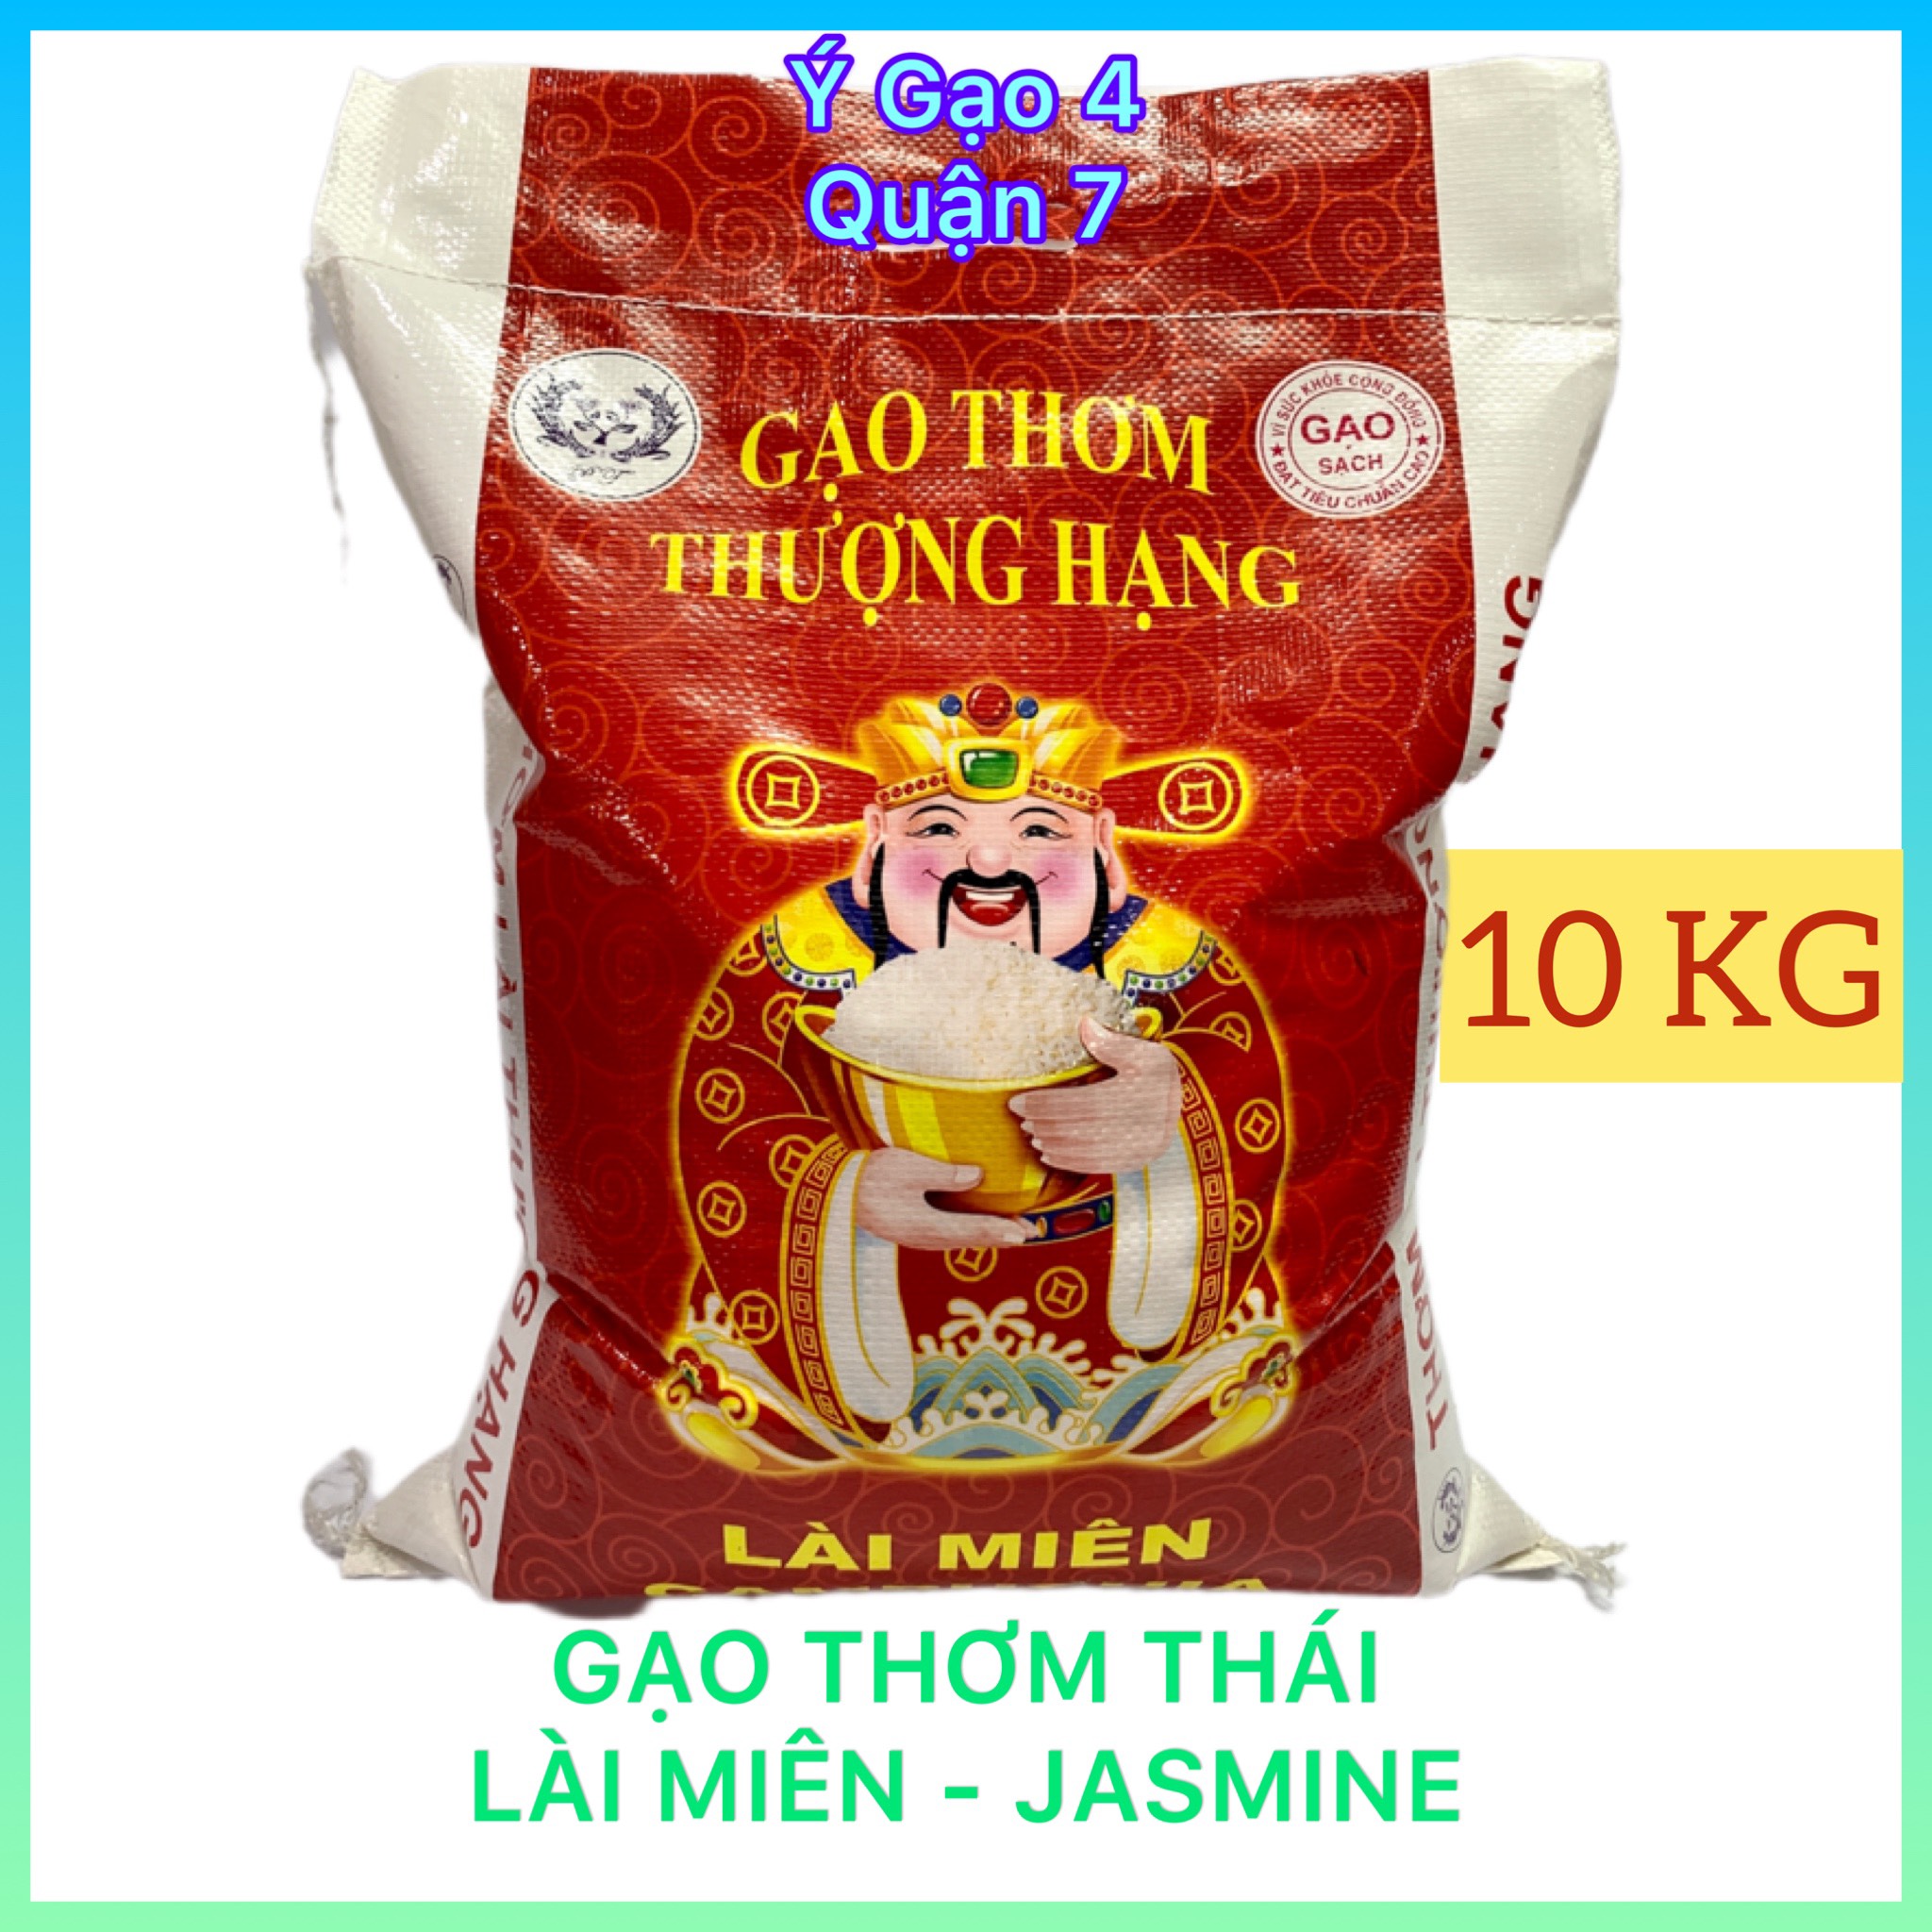 Rice Lai mien bag 10kg - type rice plastic medium flexible little